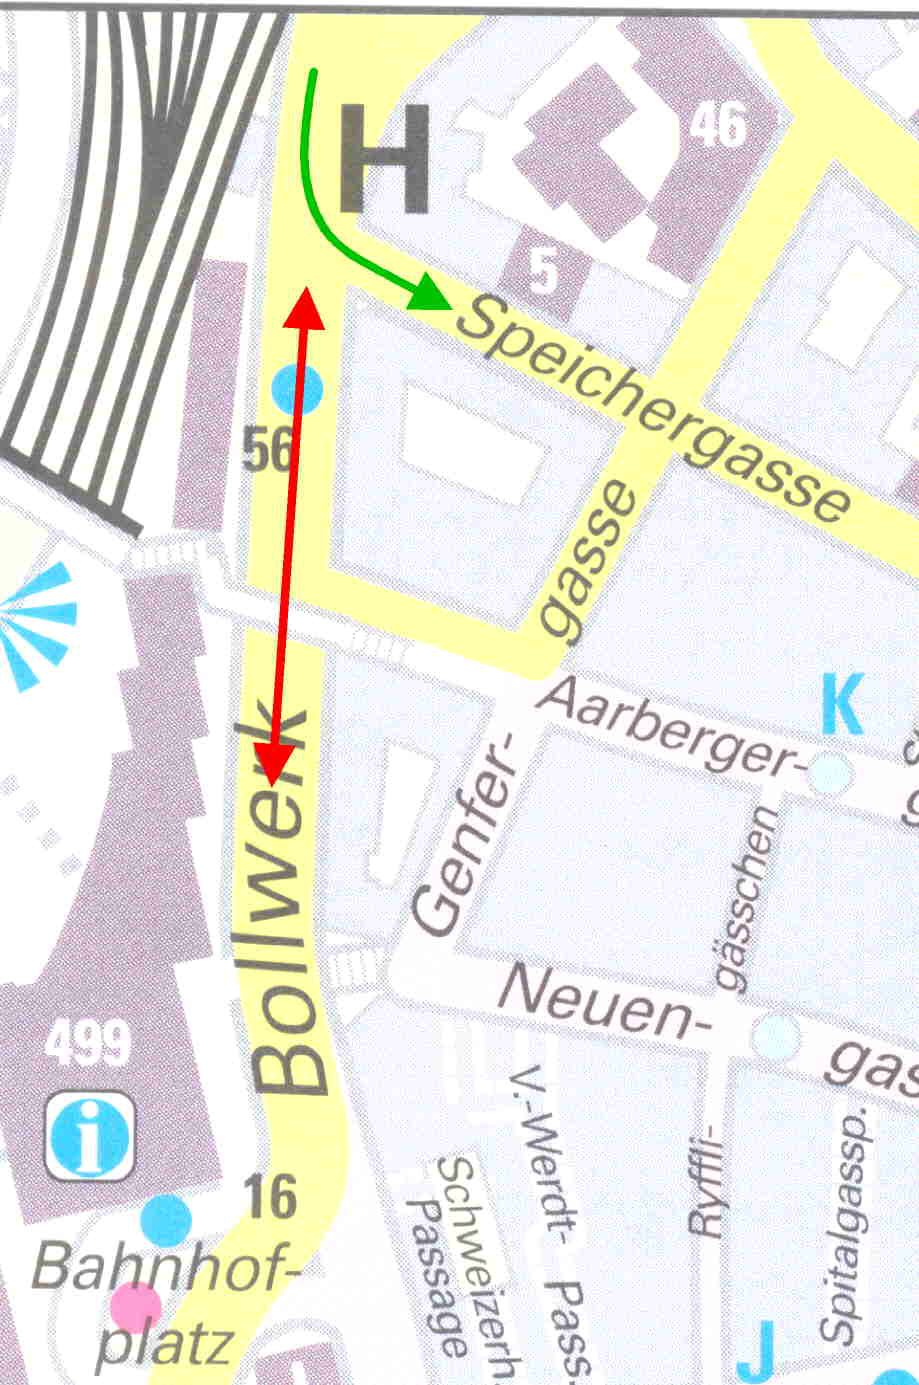 Verkehr offen NABEL-Station MeteoMast PM1 Verkehr Messung gesperrt Wasserleitungsbruch Abbildung 1: Situationsplan für Bern-Bollwerk (Kartenhintergrund Kopie aus dem Stadtplan Bern, (c) Media Swiss